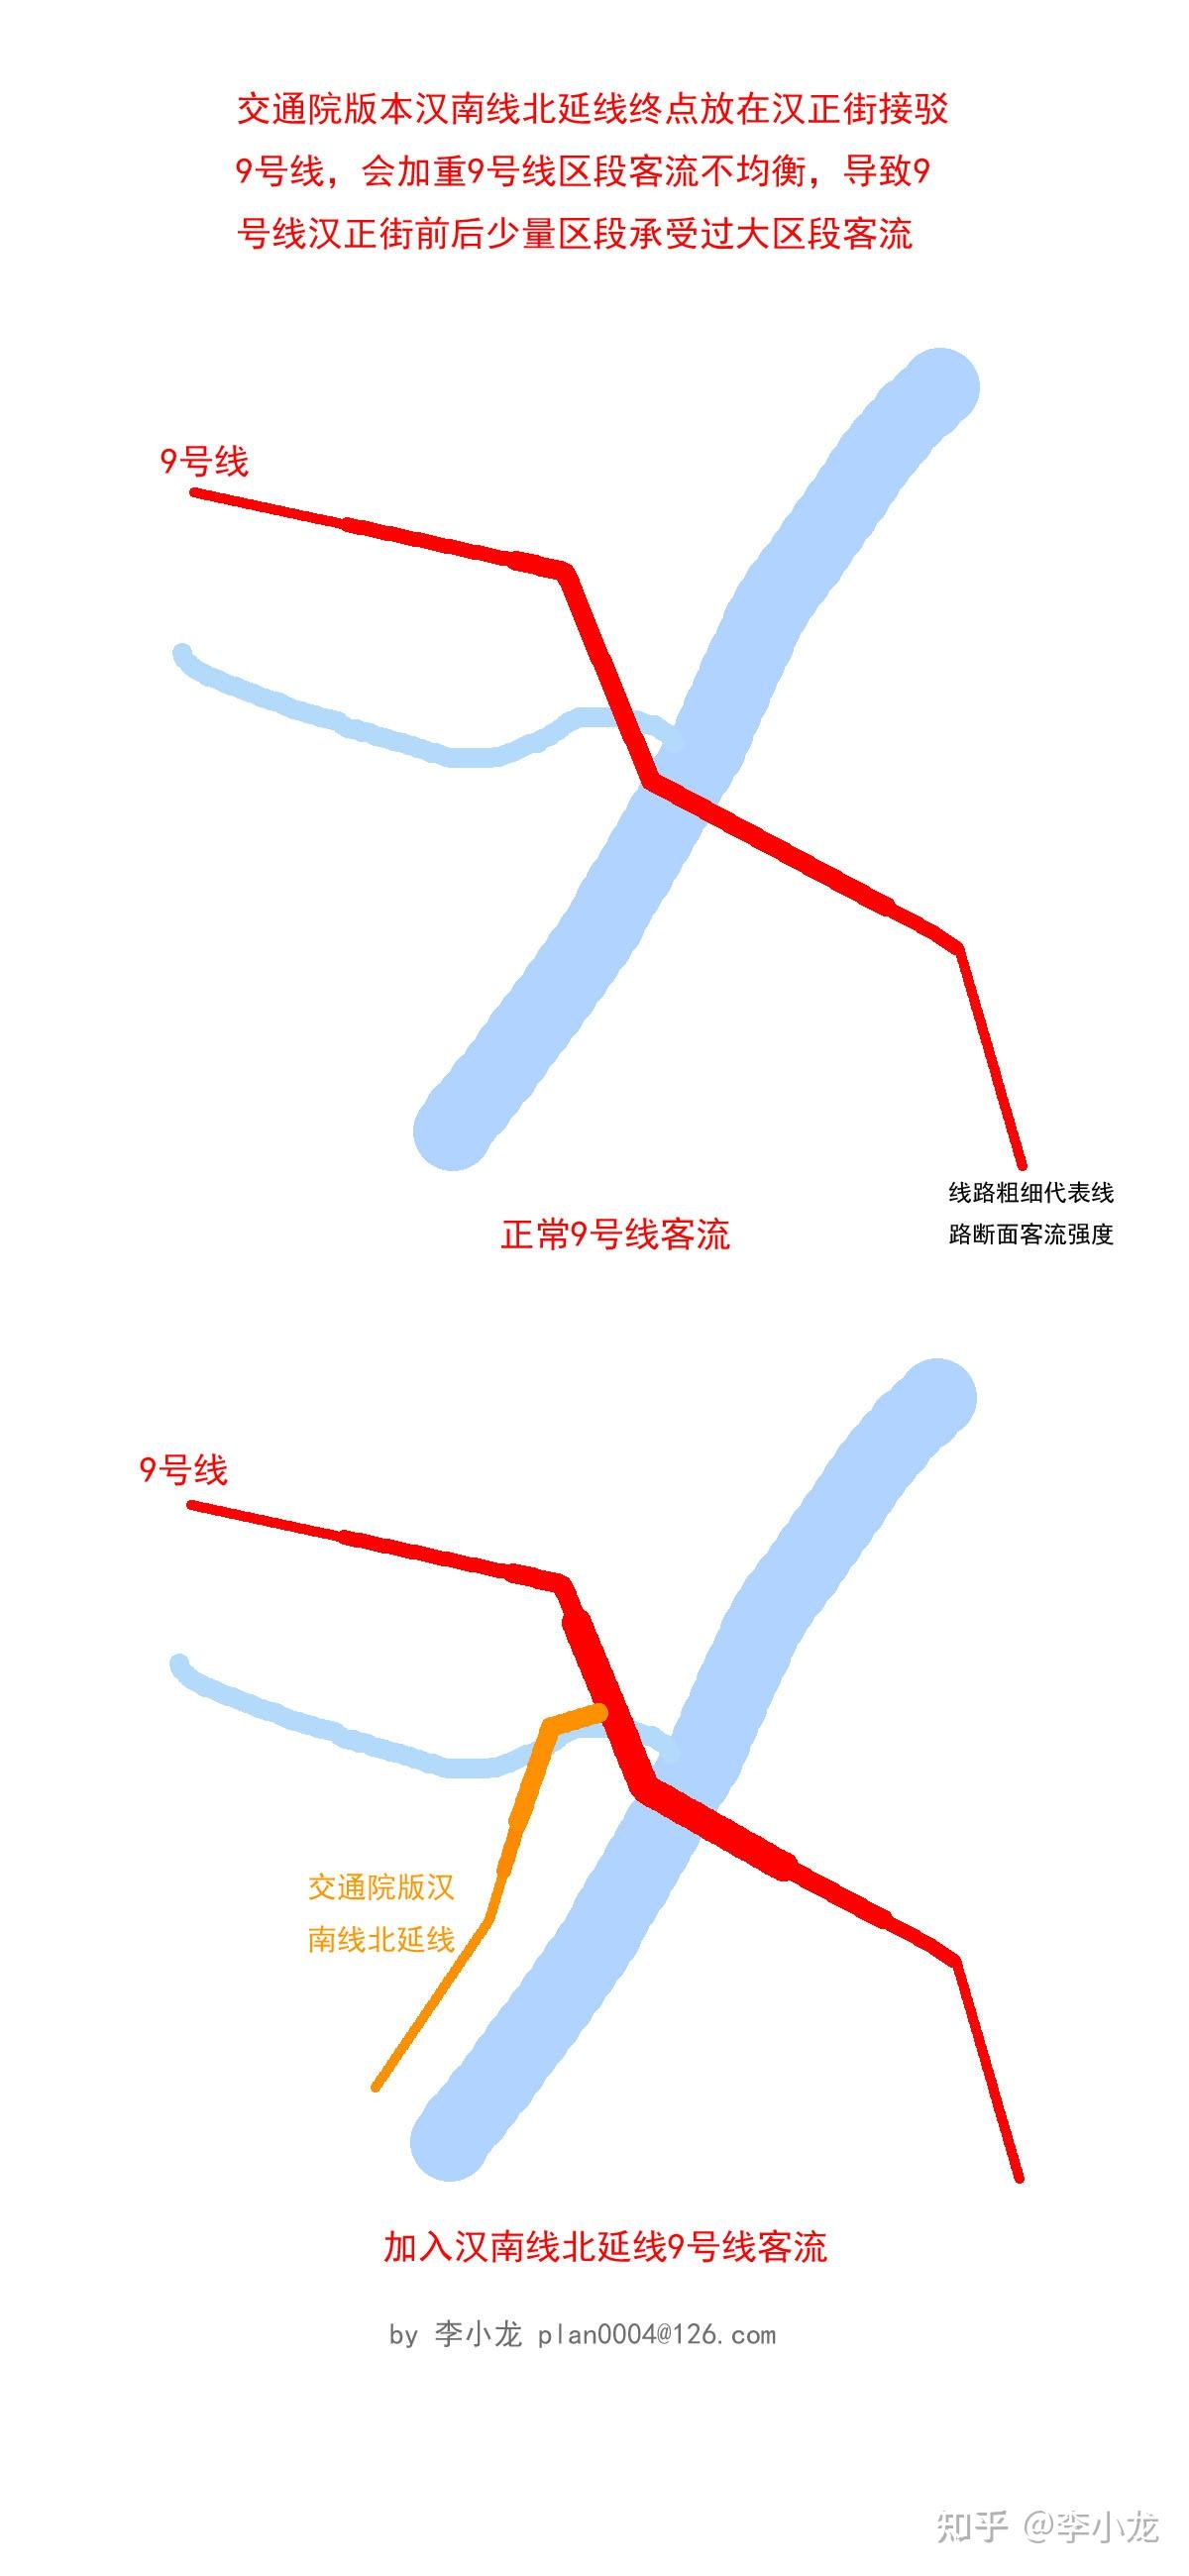 武汉地铁汉南线北延线两种方案的选择问题作者李小龙